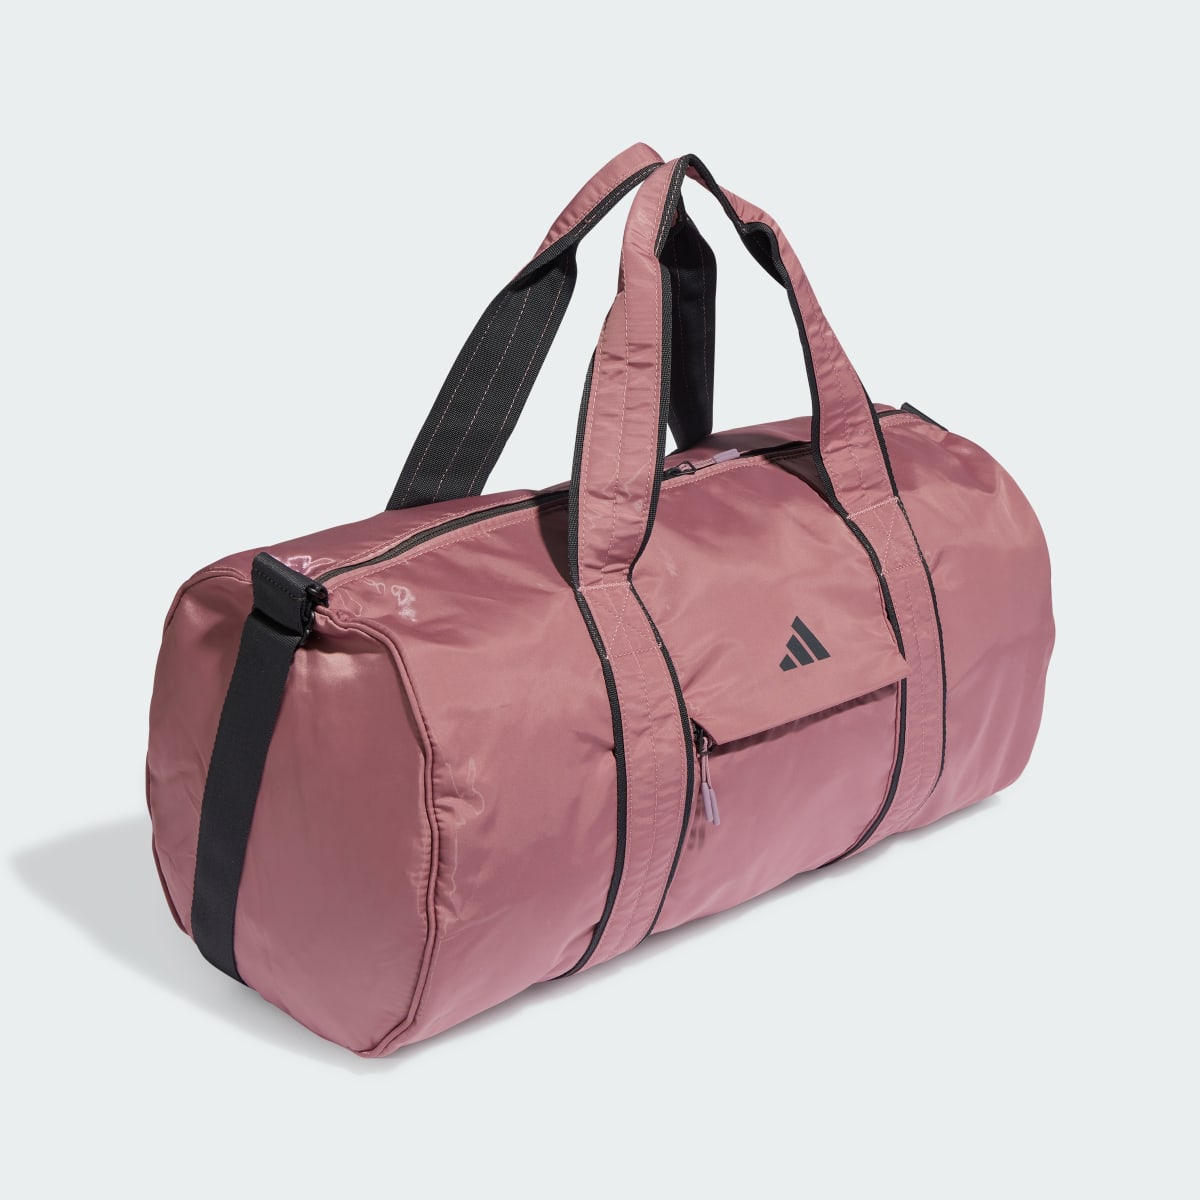 Adidas Yoga Duffel Bag. 4